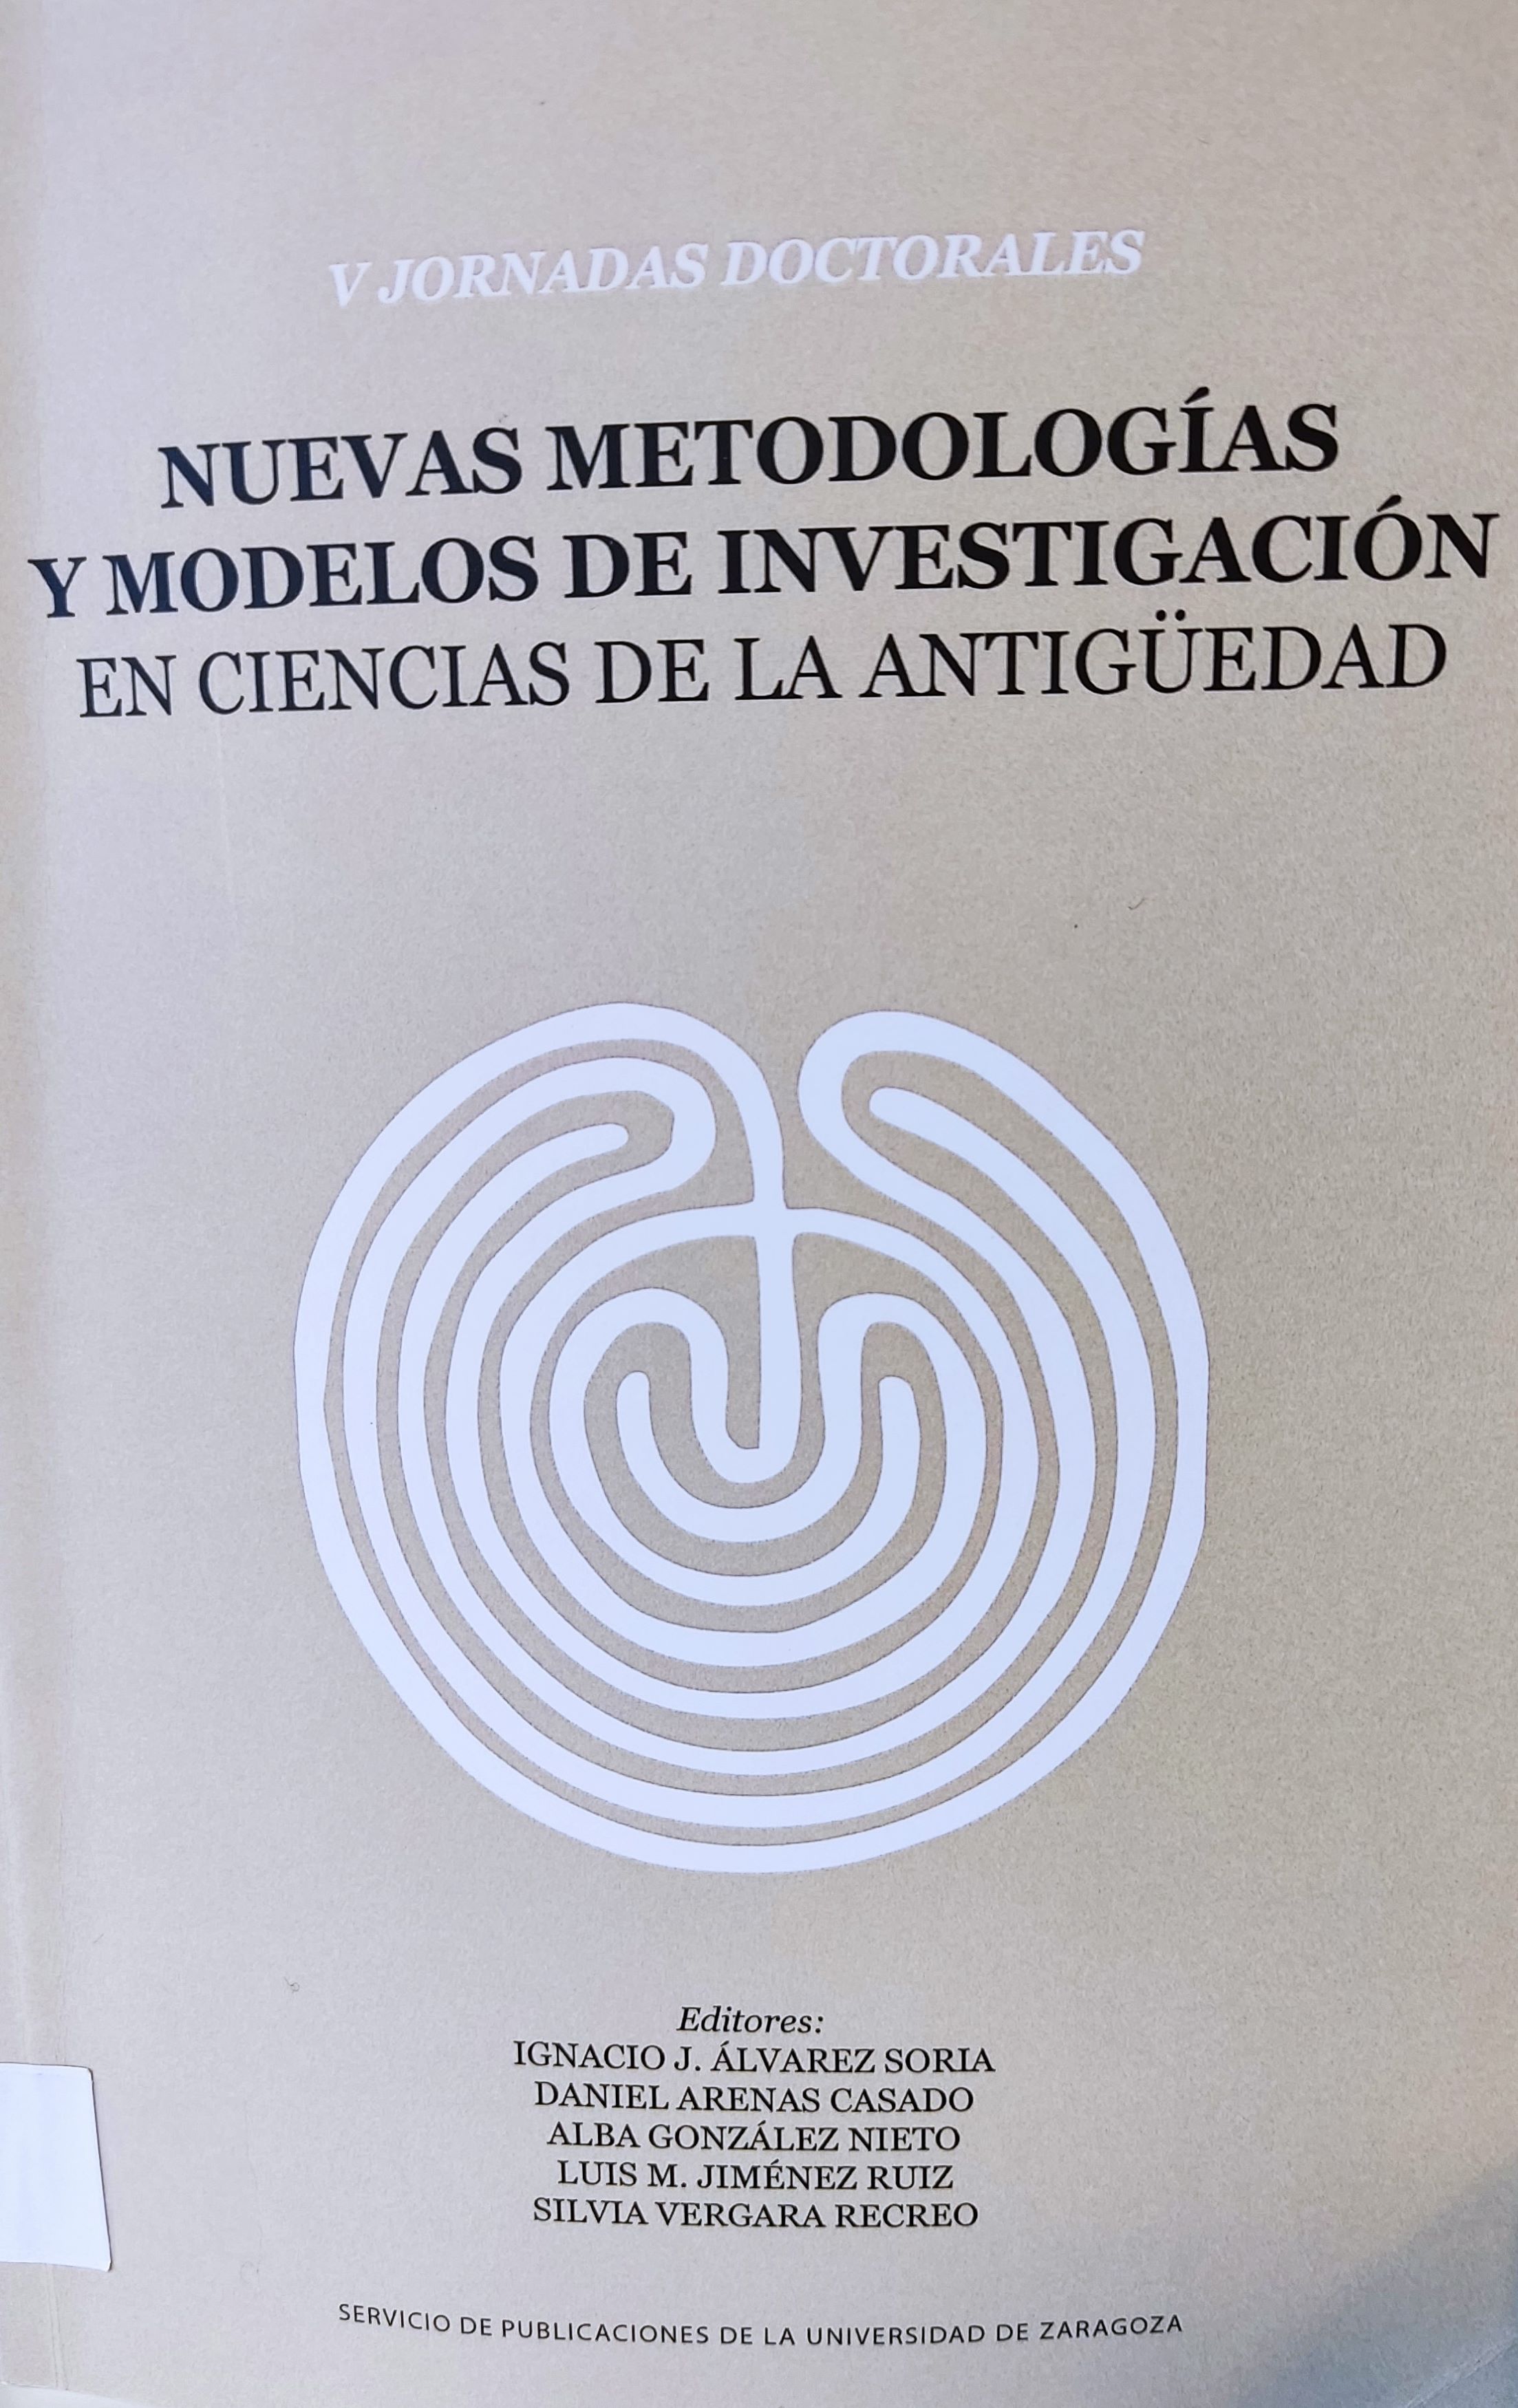 Imagen de portada del libro Nuevas metodologías y modelos de investigación en ciencias de la antigüedad